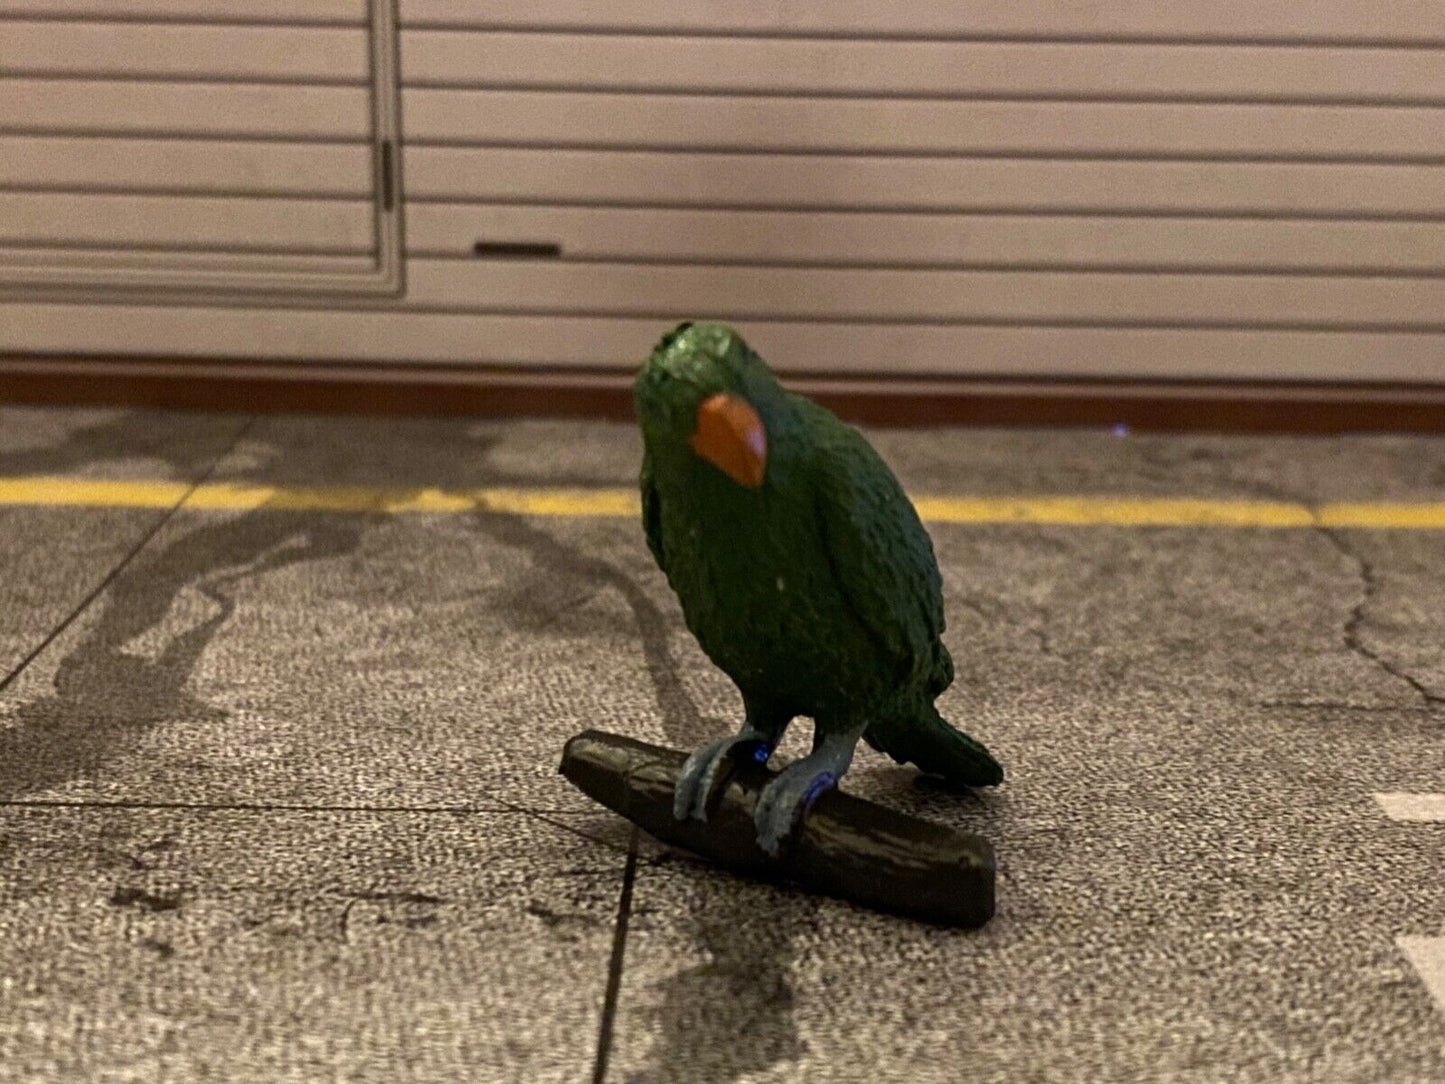 Papagei Ara grün Südamerika Kunststoff neu Diorama Maßstab ca. 1:10 / 1:12